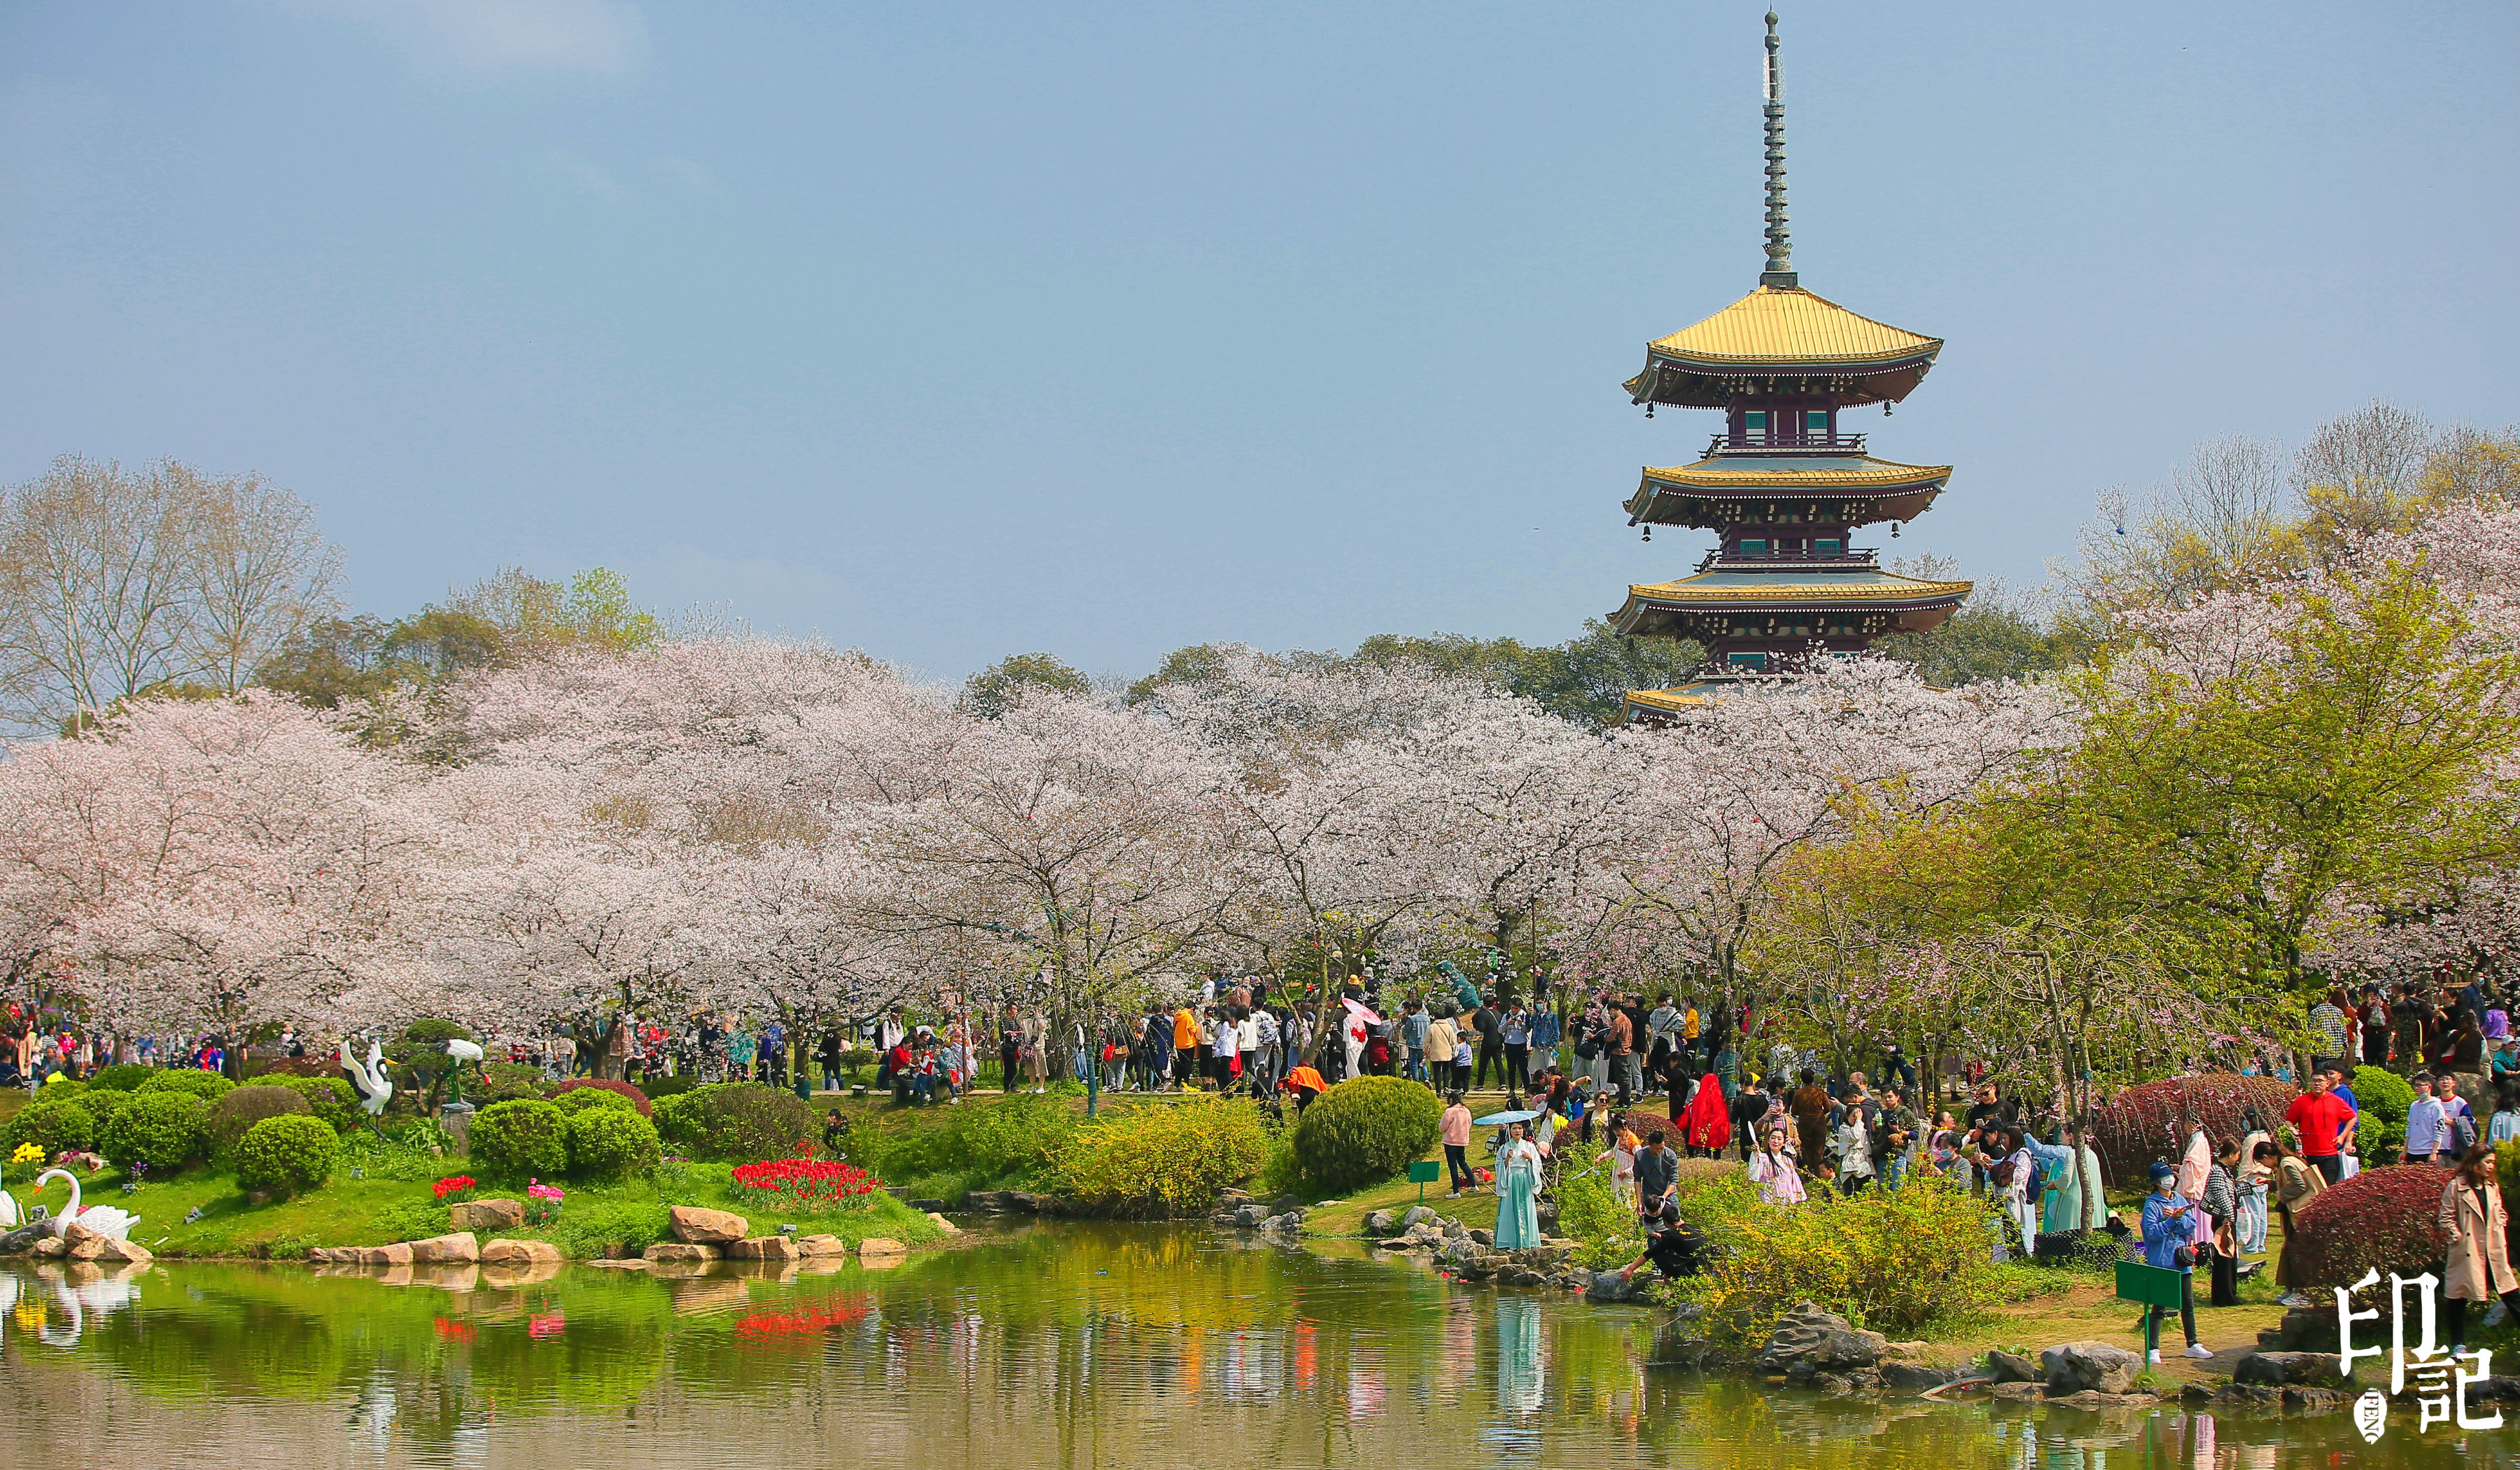 樱花如期绽放 共赴春天之约 武汉东湖樱花园佳景与美诗带你神游仙境